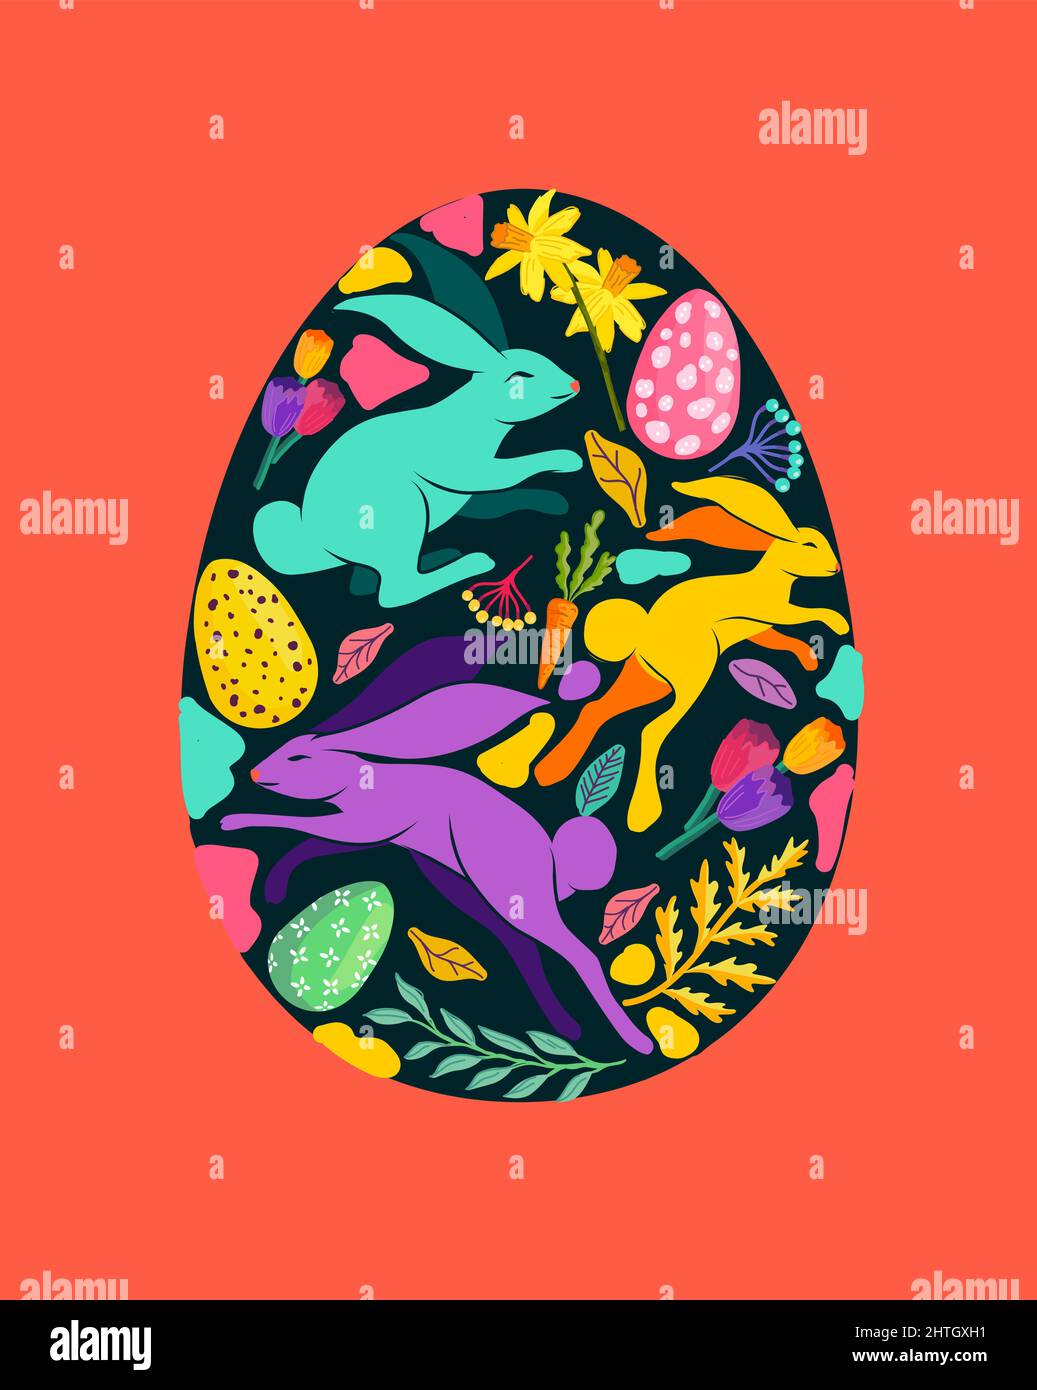 Uovo di pasqua colorato e luminoso decorato con fiori e piante floreali, conigli e uova di pasqua. Illustrazione vettoriale. Illustrazione Vettoriale